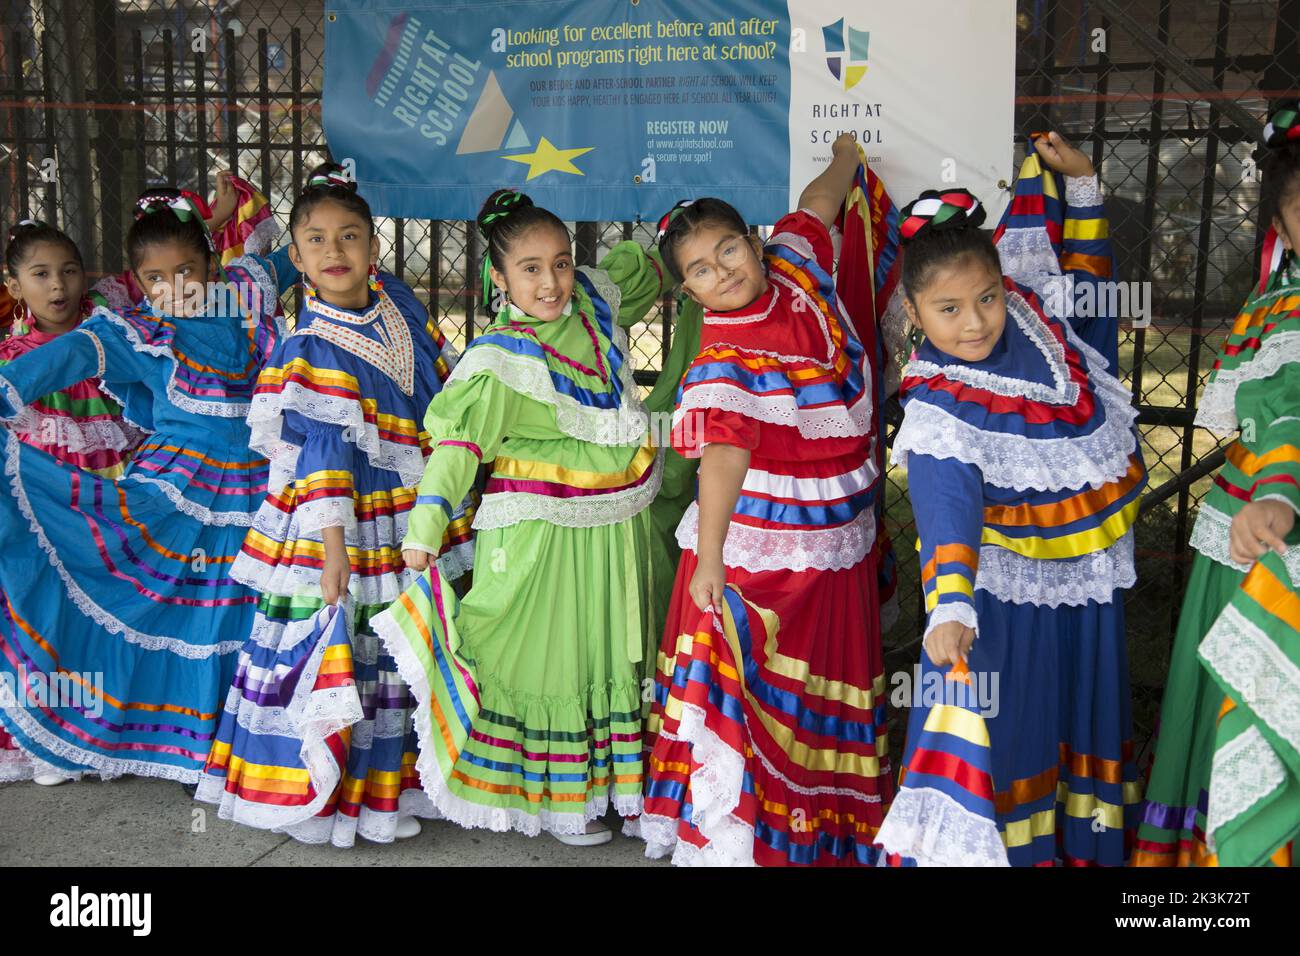 Les danseurs de Child Mariachi se produisent lors des célébrations de la fête de l'indépendance du Mexique lors d'un festival multiculturel scolaire à Brooklyn, New York. Banque D'Images